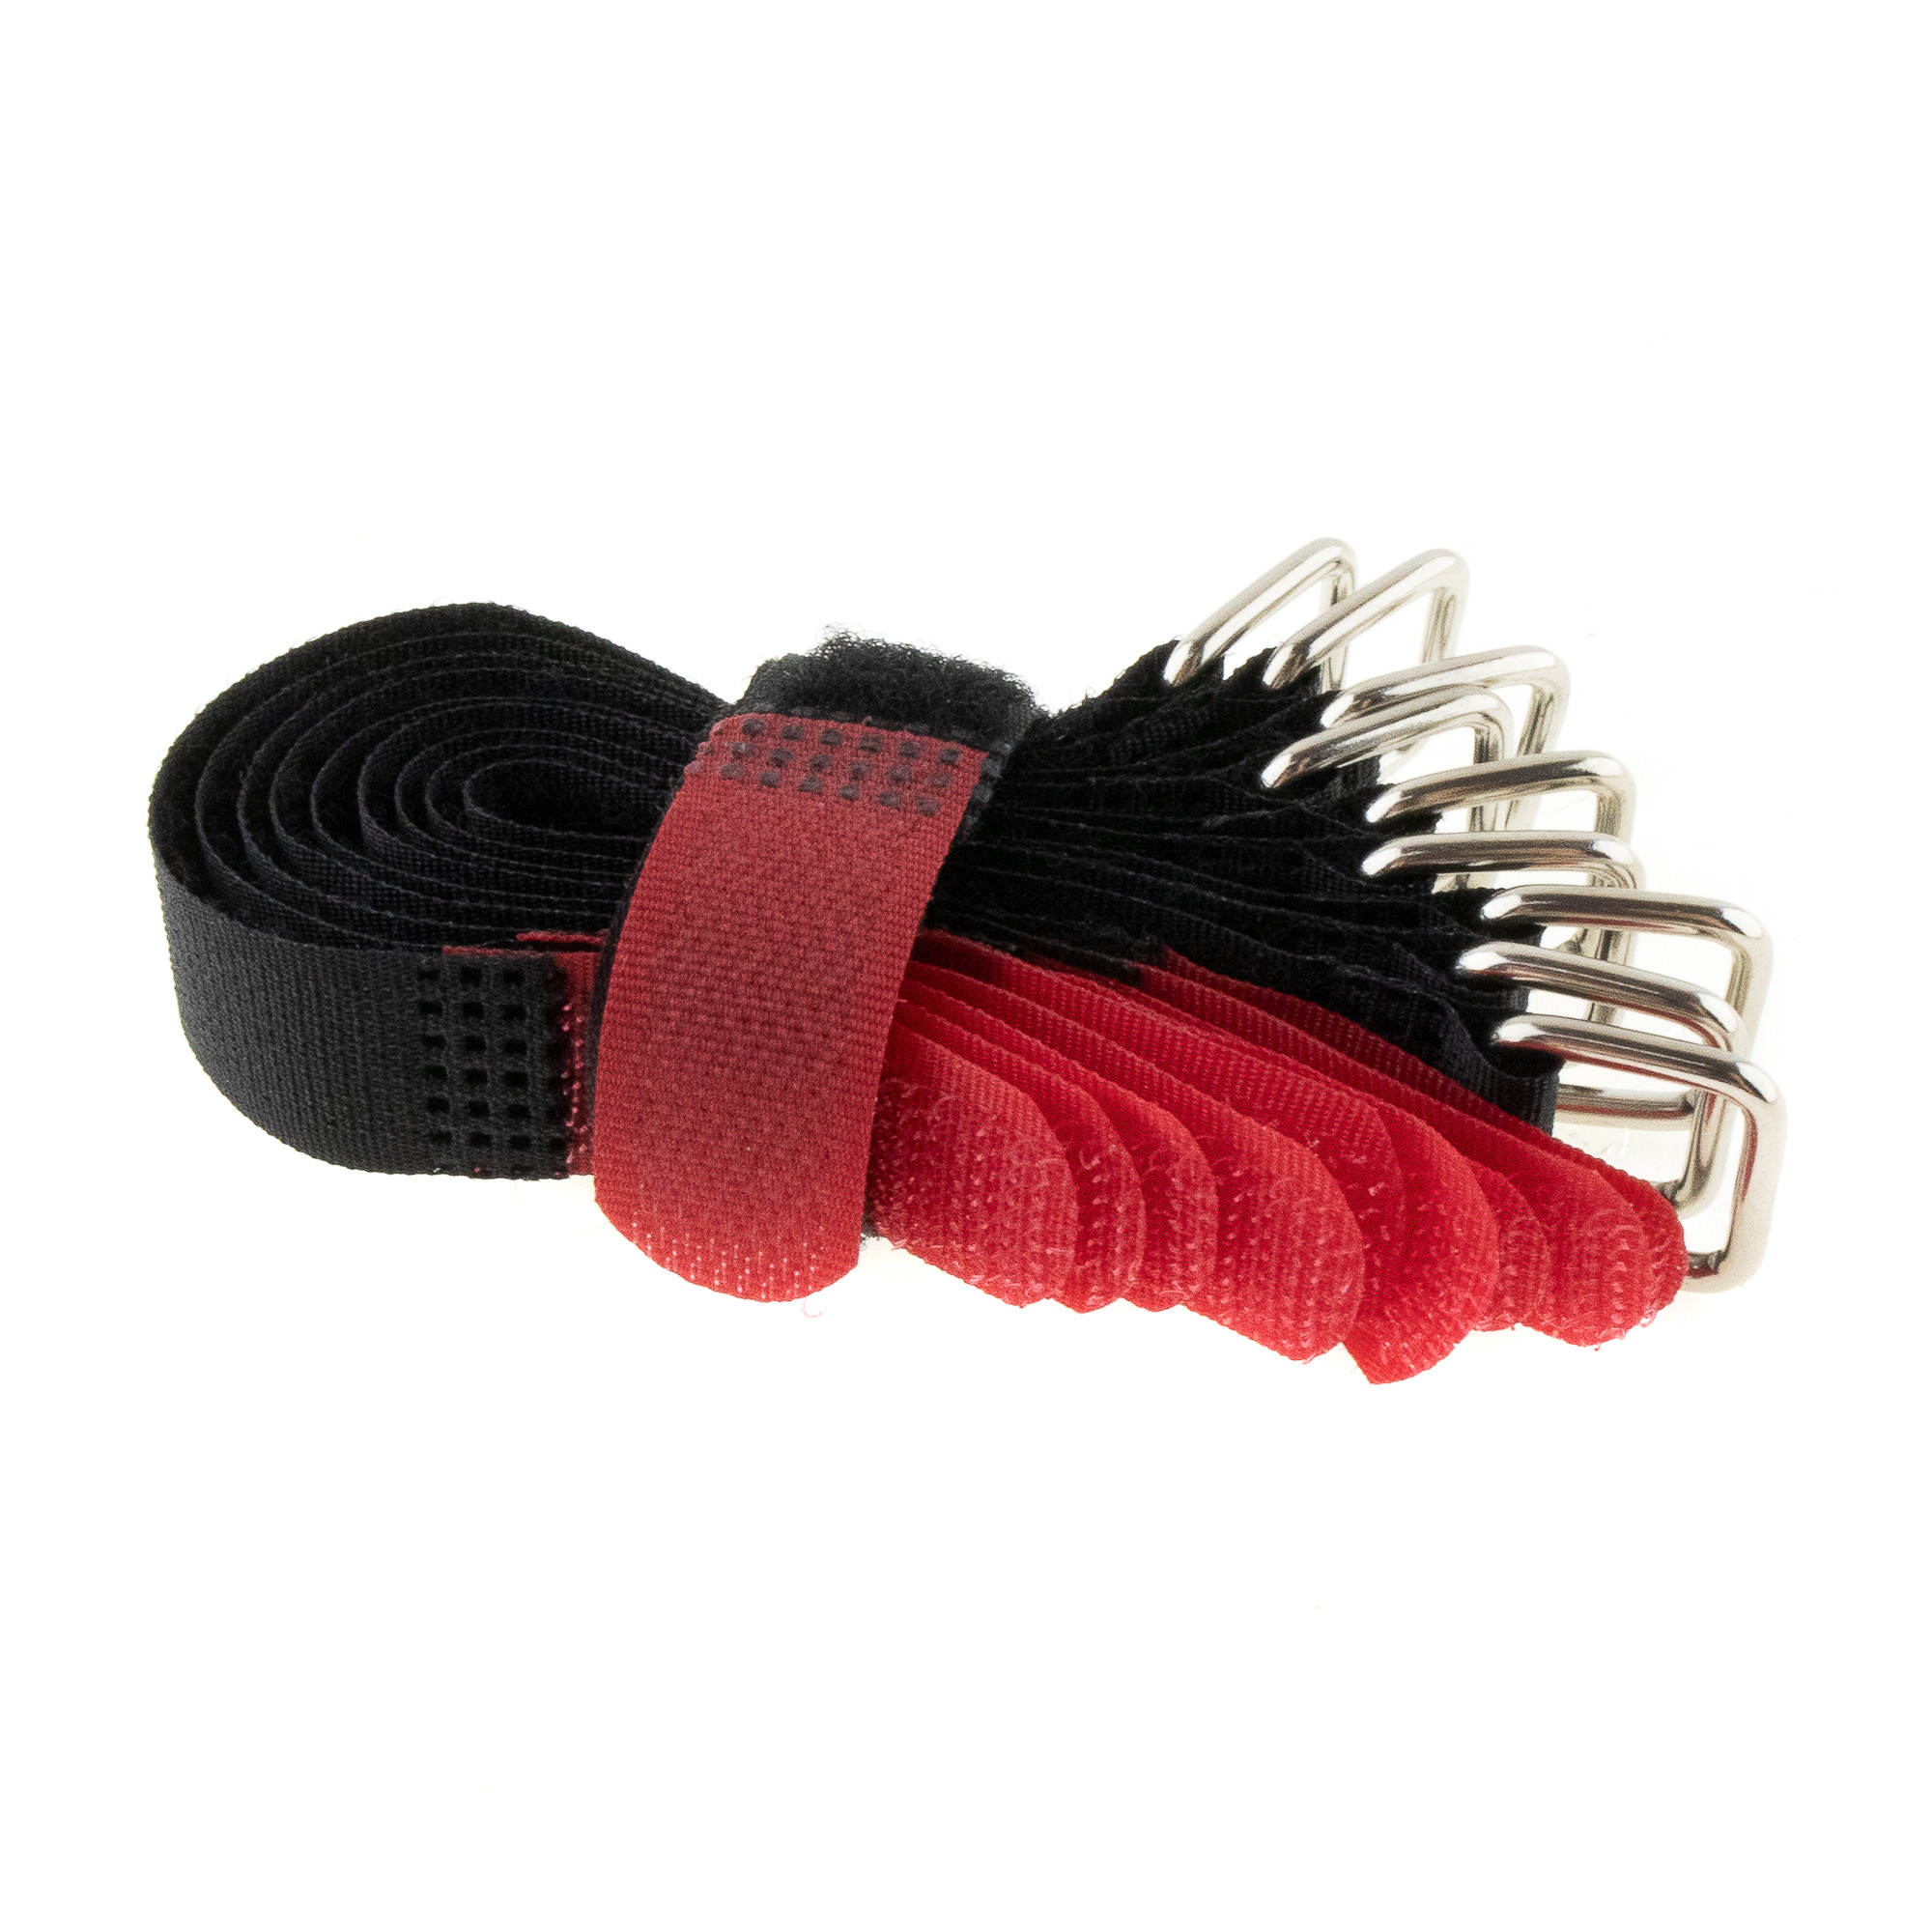 Hook-and-loop strap 150x16, black/red, crossed, 10PCS